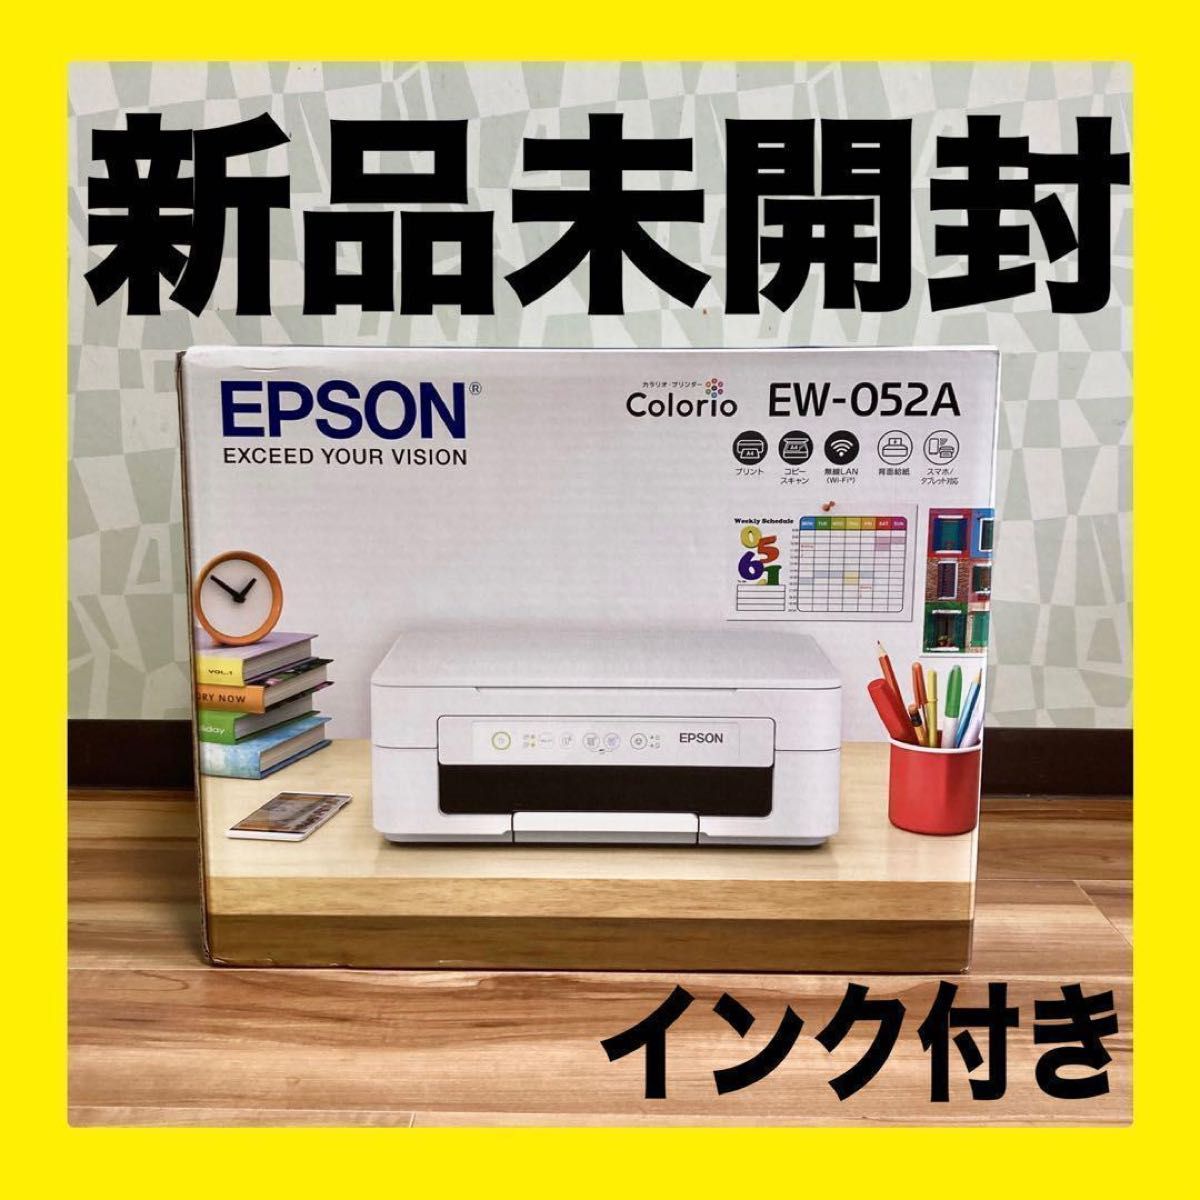 プリンター/コピー機 インクジェット複合機 インク付き カラリオ EW